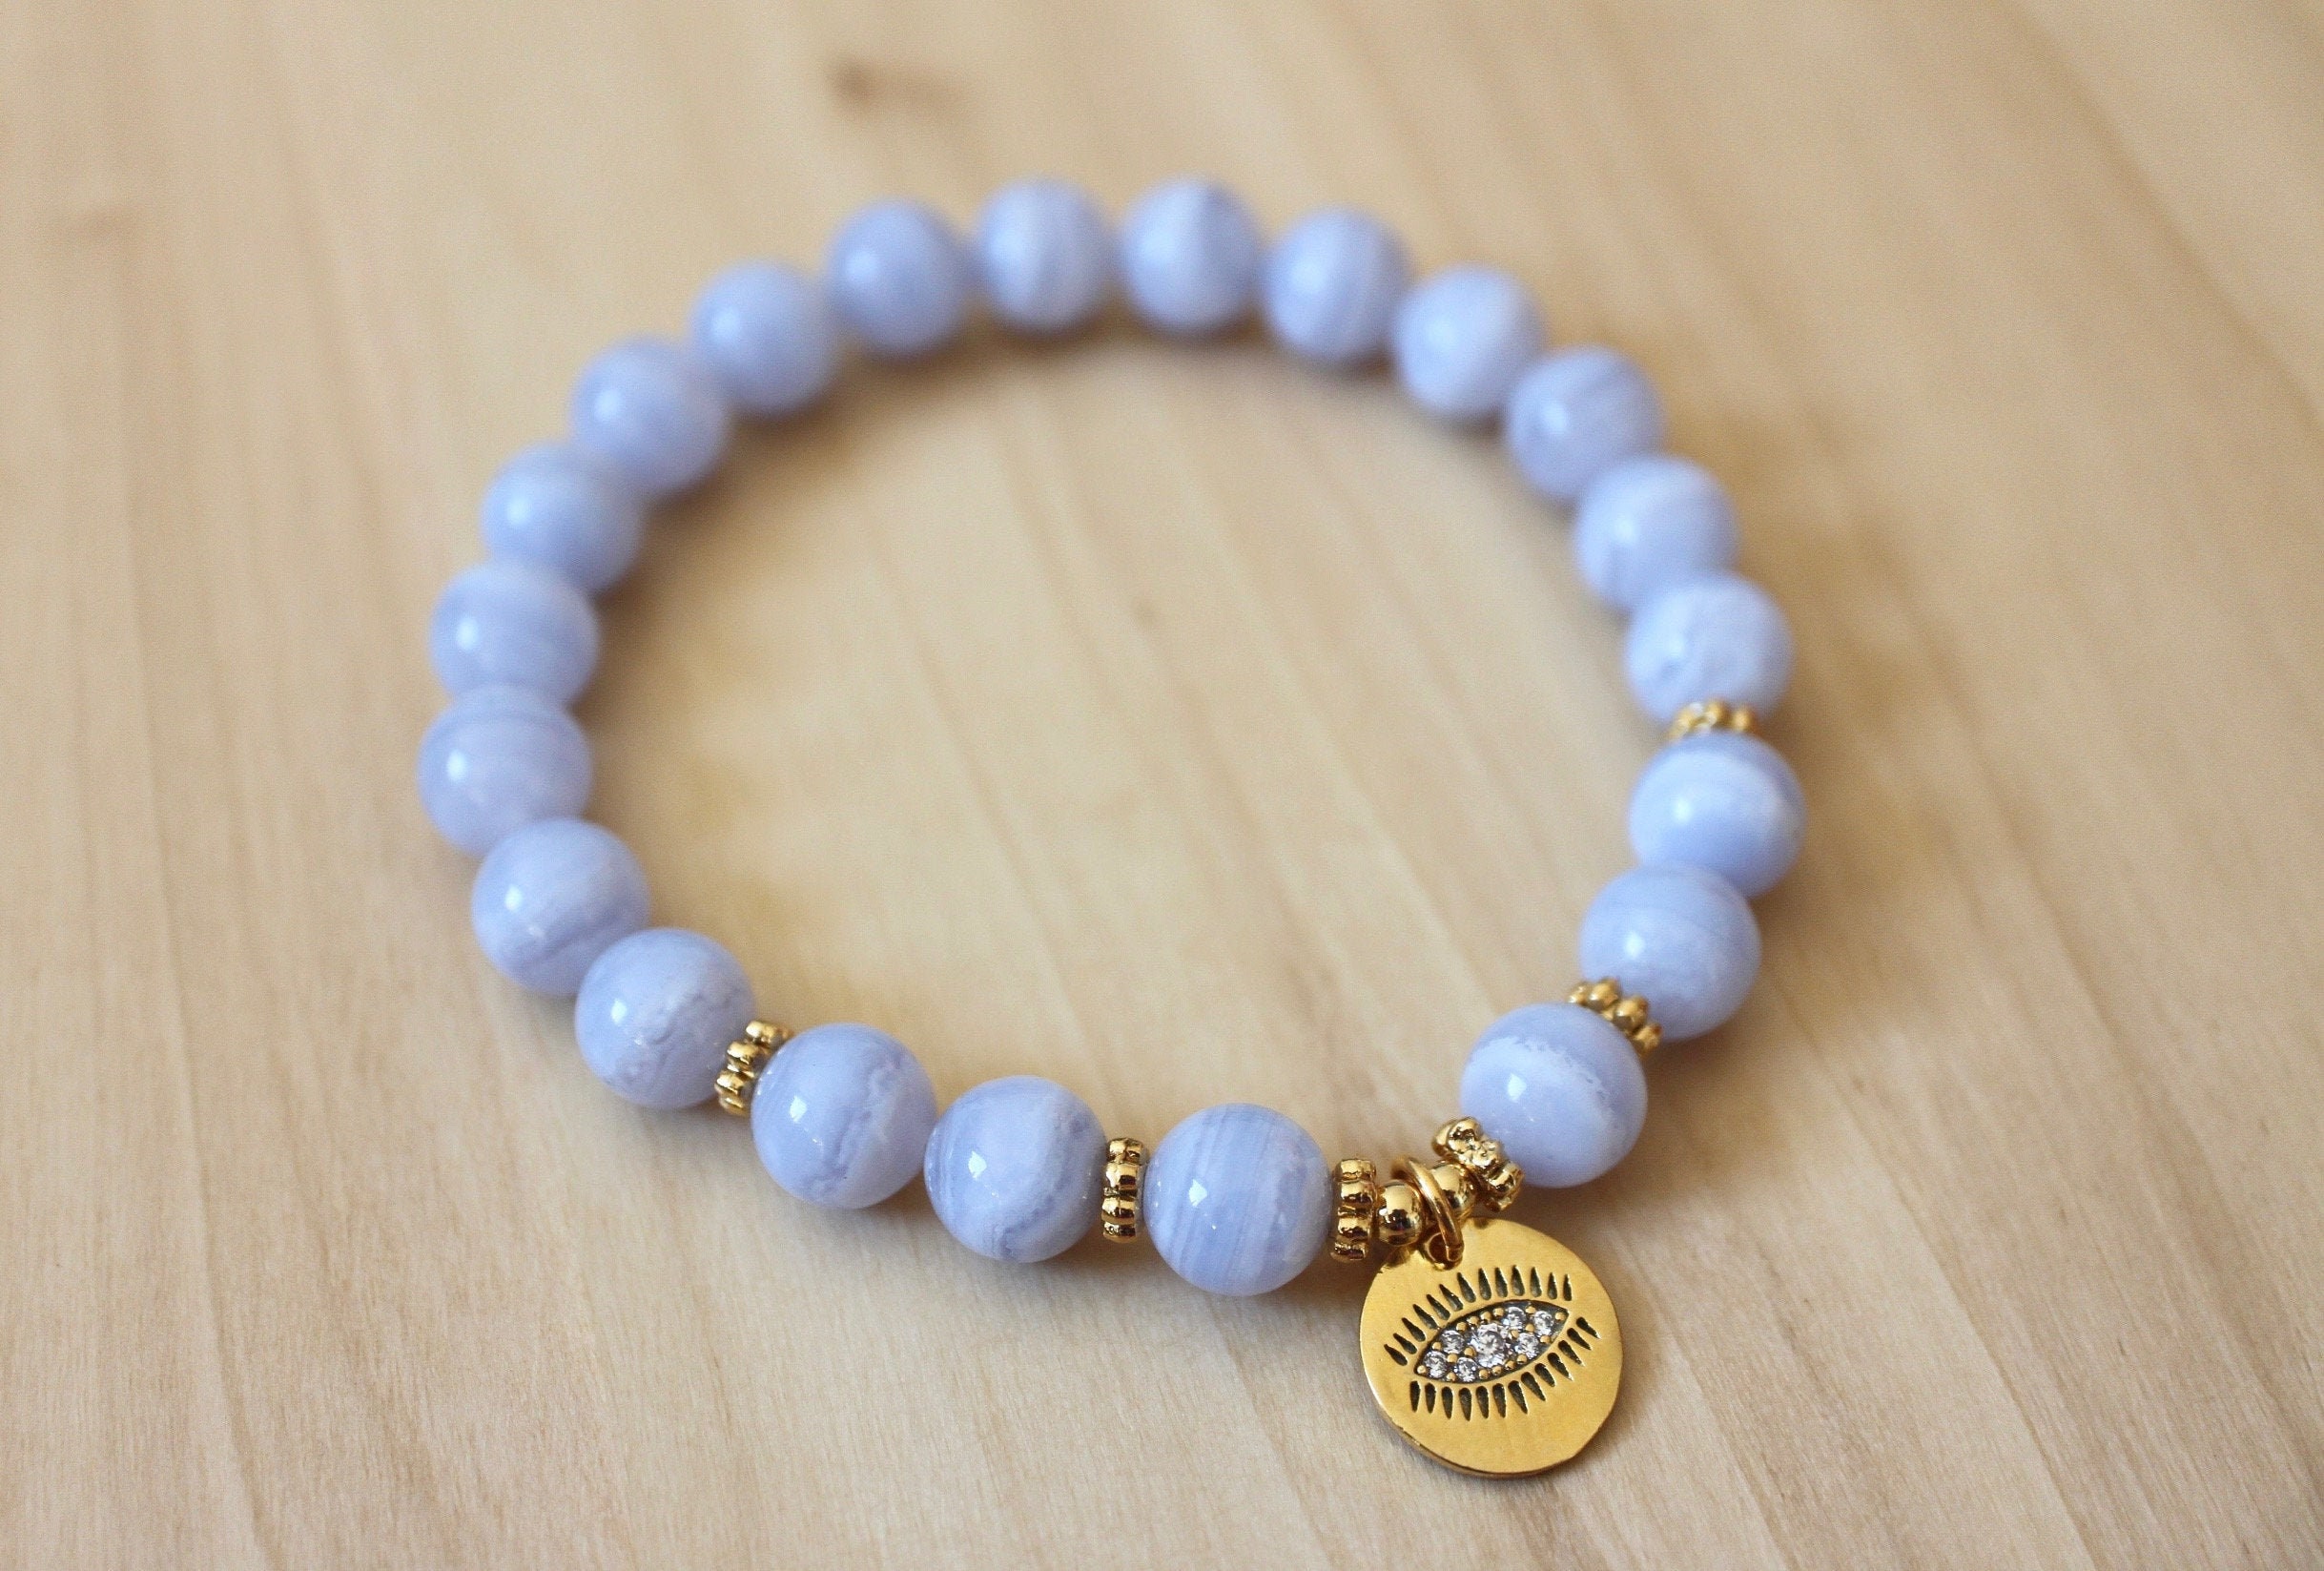 Blue Lace Agate Bracelet Mala Bracelet Wrist Mala Beads | Etsy